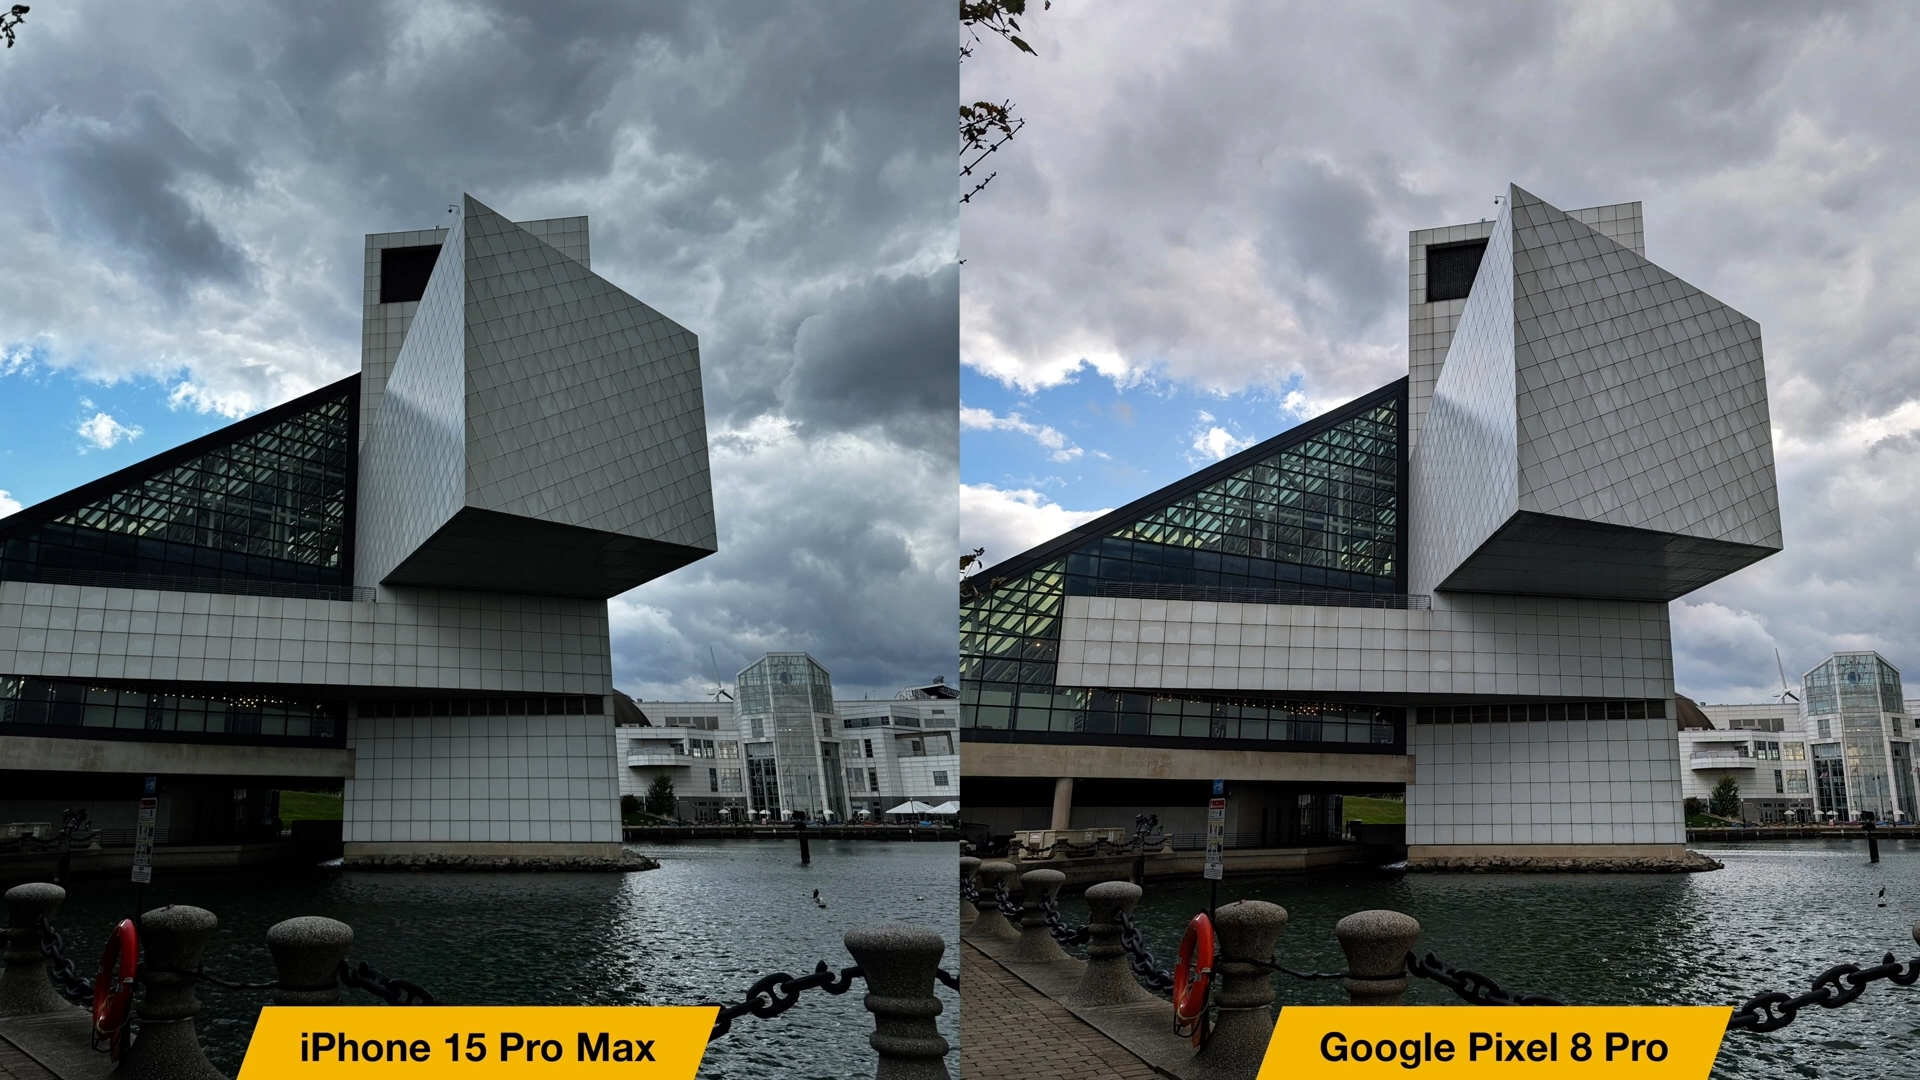 来自 iPhoneIslam.com，iPhone 15 Pro Max 摄像头与 Google Pixel 8 Pro 摄像头的比较。